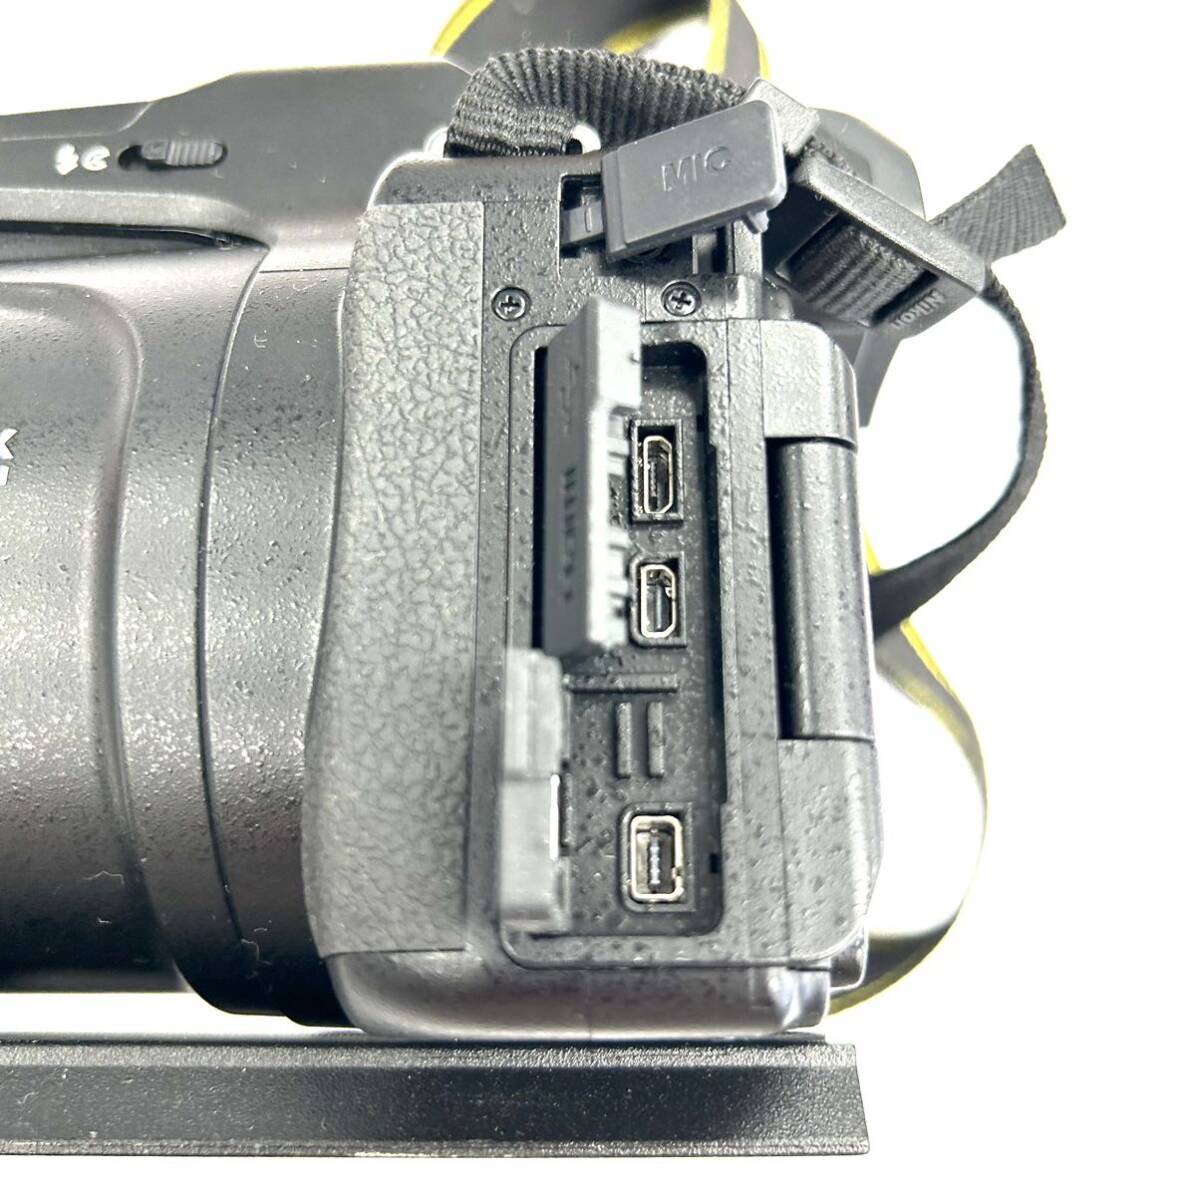 Y325 デジタルカメラ Nikon ニコン COOLPIX P1000 125X WIDE OPTICAL ZOOM ED VR 4.3-539mm 1:2.8-8 ジャンク品 中古 訳あり_画像10